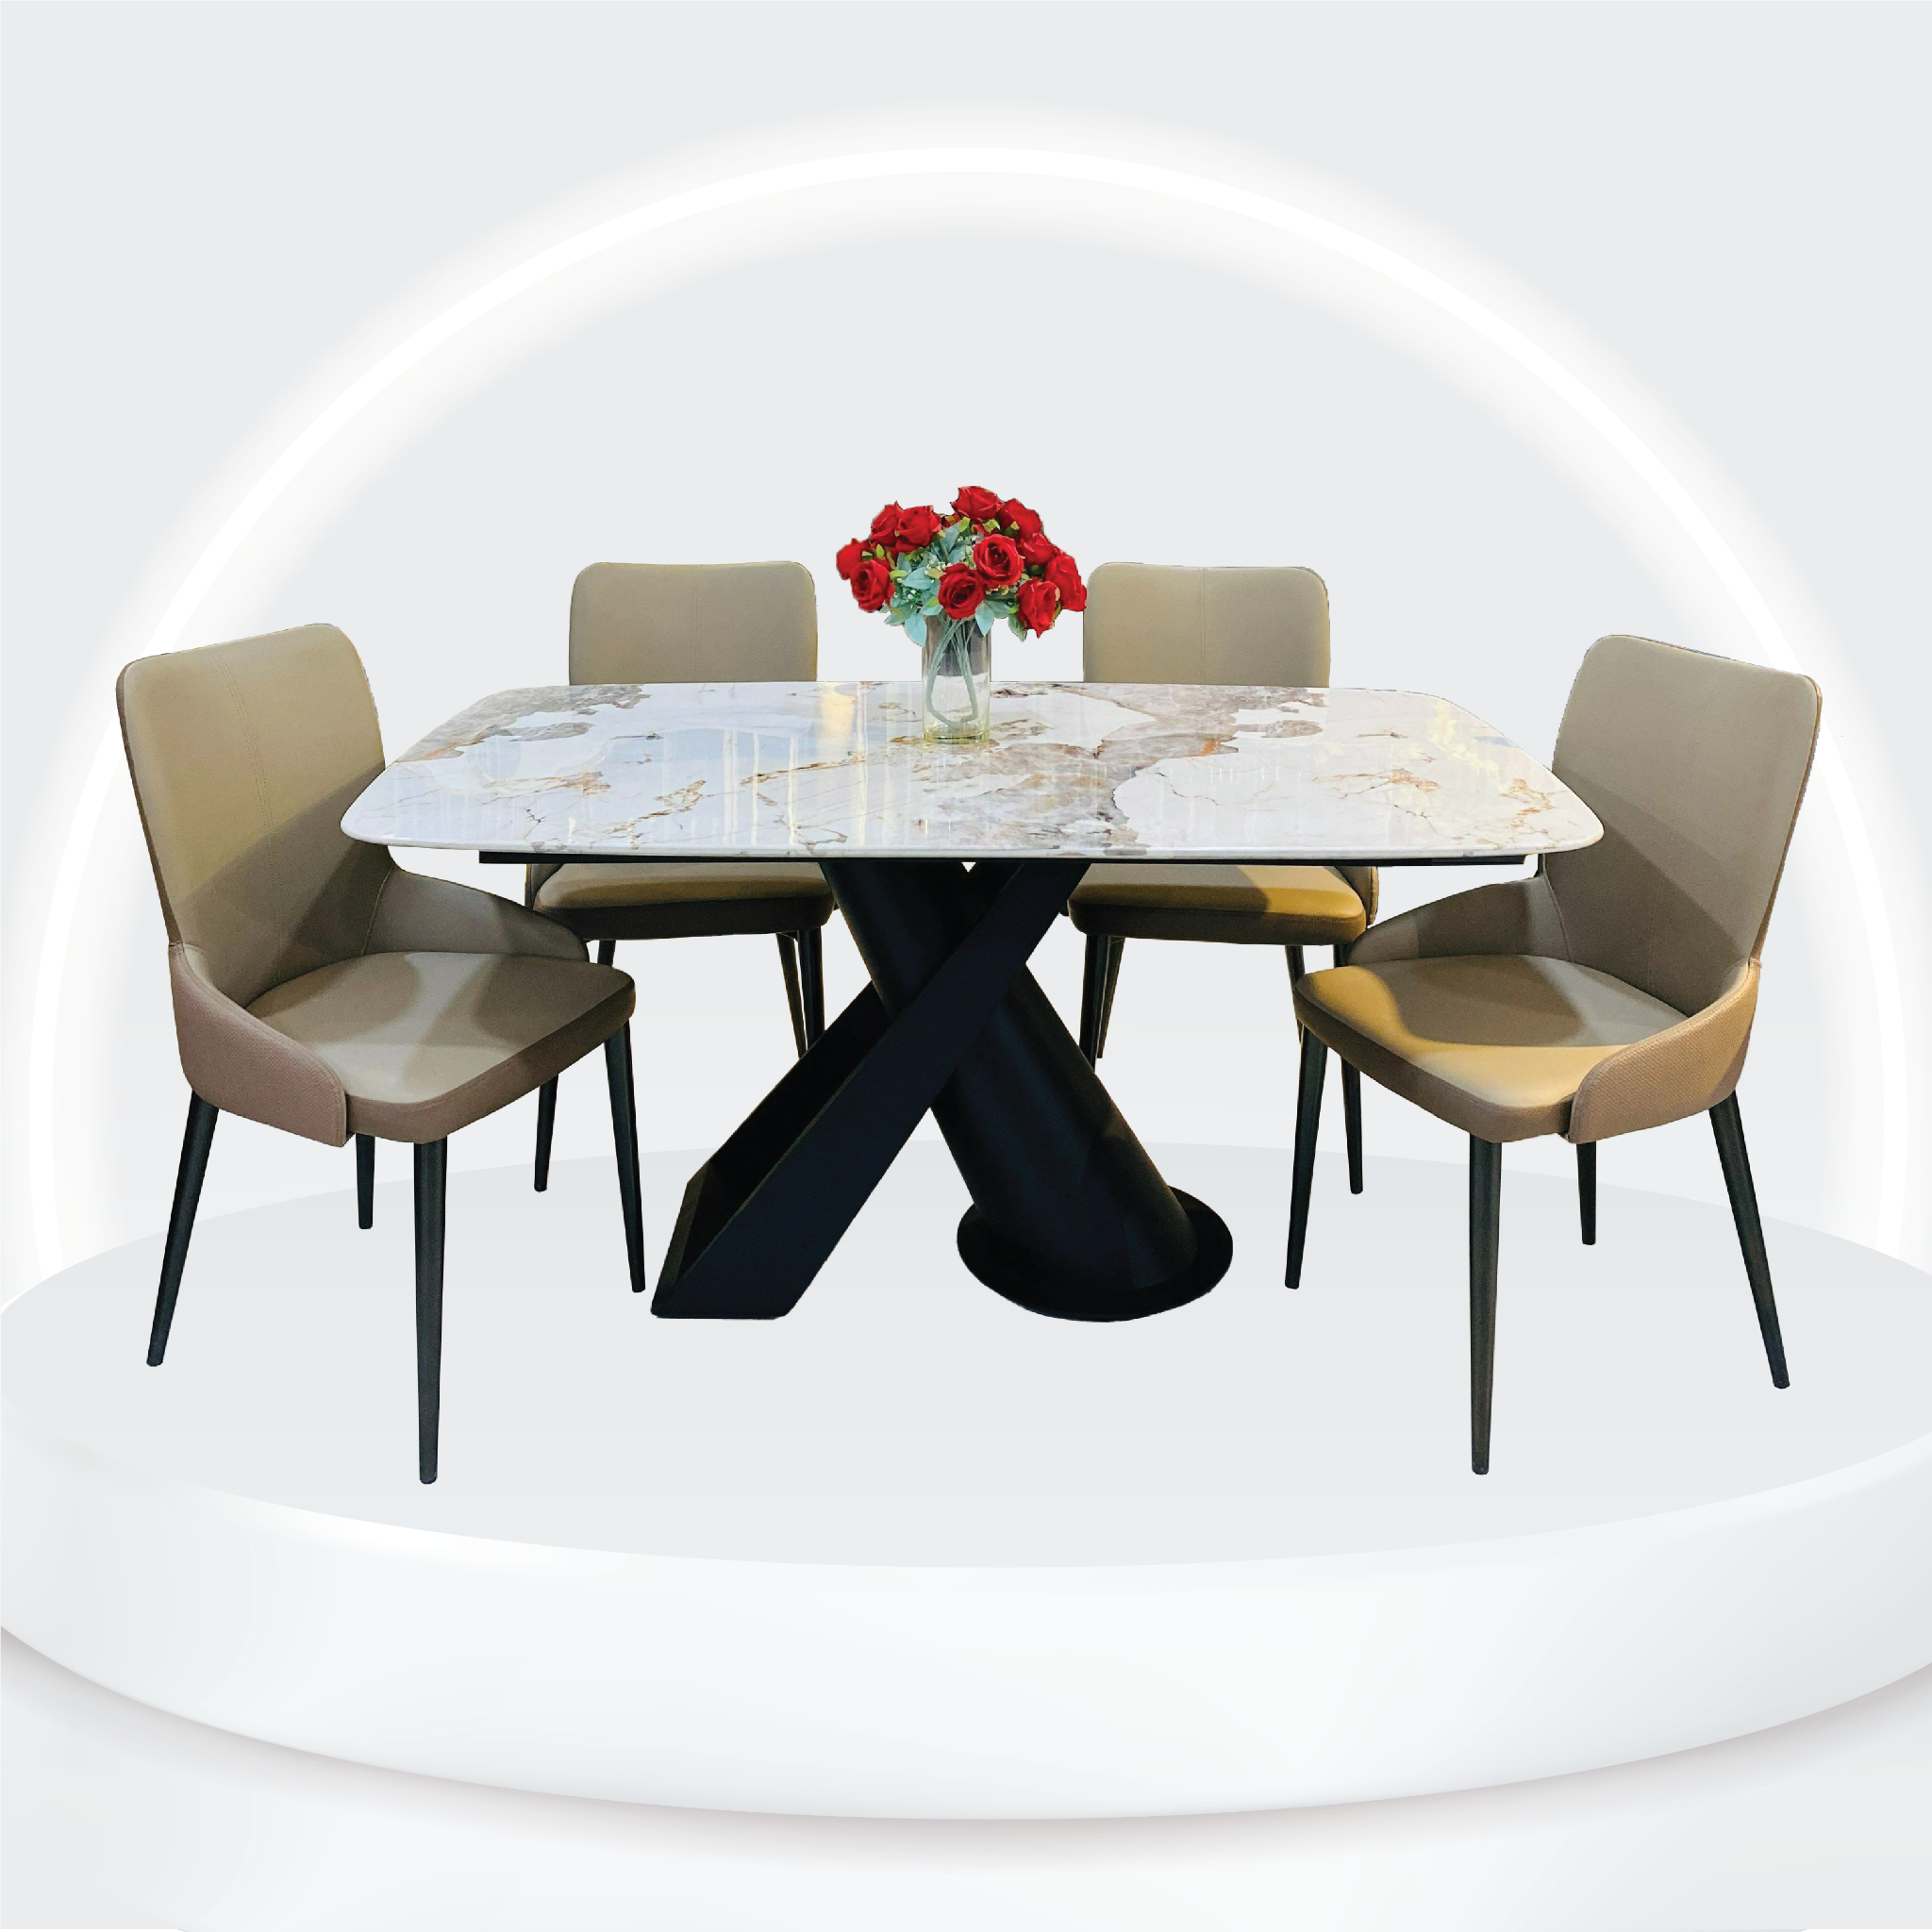 Bộ bàn ăn mặt đá cao cấp Alan.vn: Hãy tạo ra một không gian ăn uống đẳng cấp và sang trọng với bộ bàn ăn mặt đá cao cấp của Alan.vn. Sản phẩm này được thiết kế bởi những kiến trúc sư hàng đầu để mang lại cho khách hàng những sản phẩm nội thất đẳng cấp nhất.